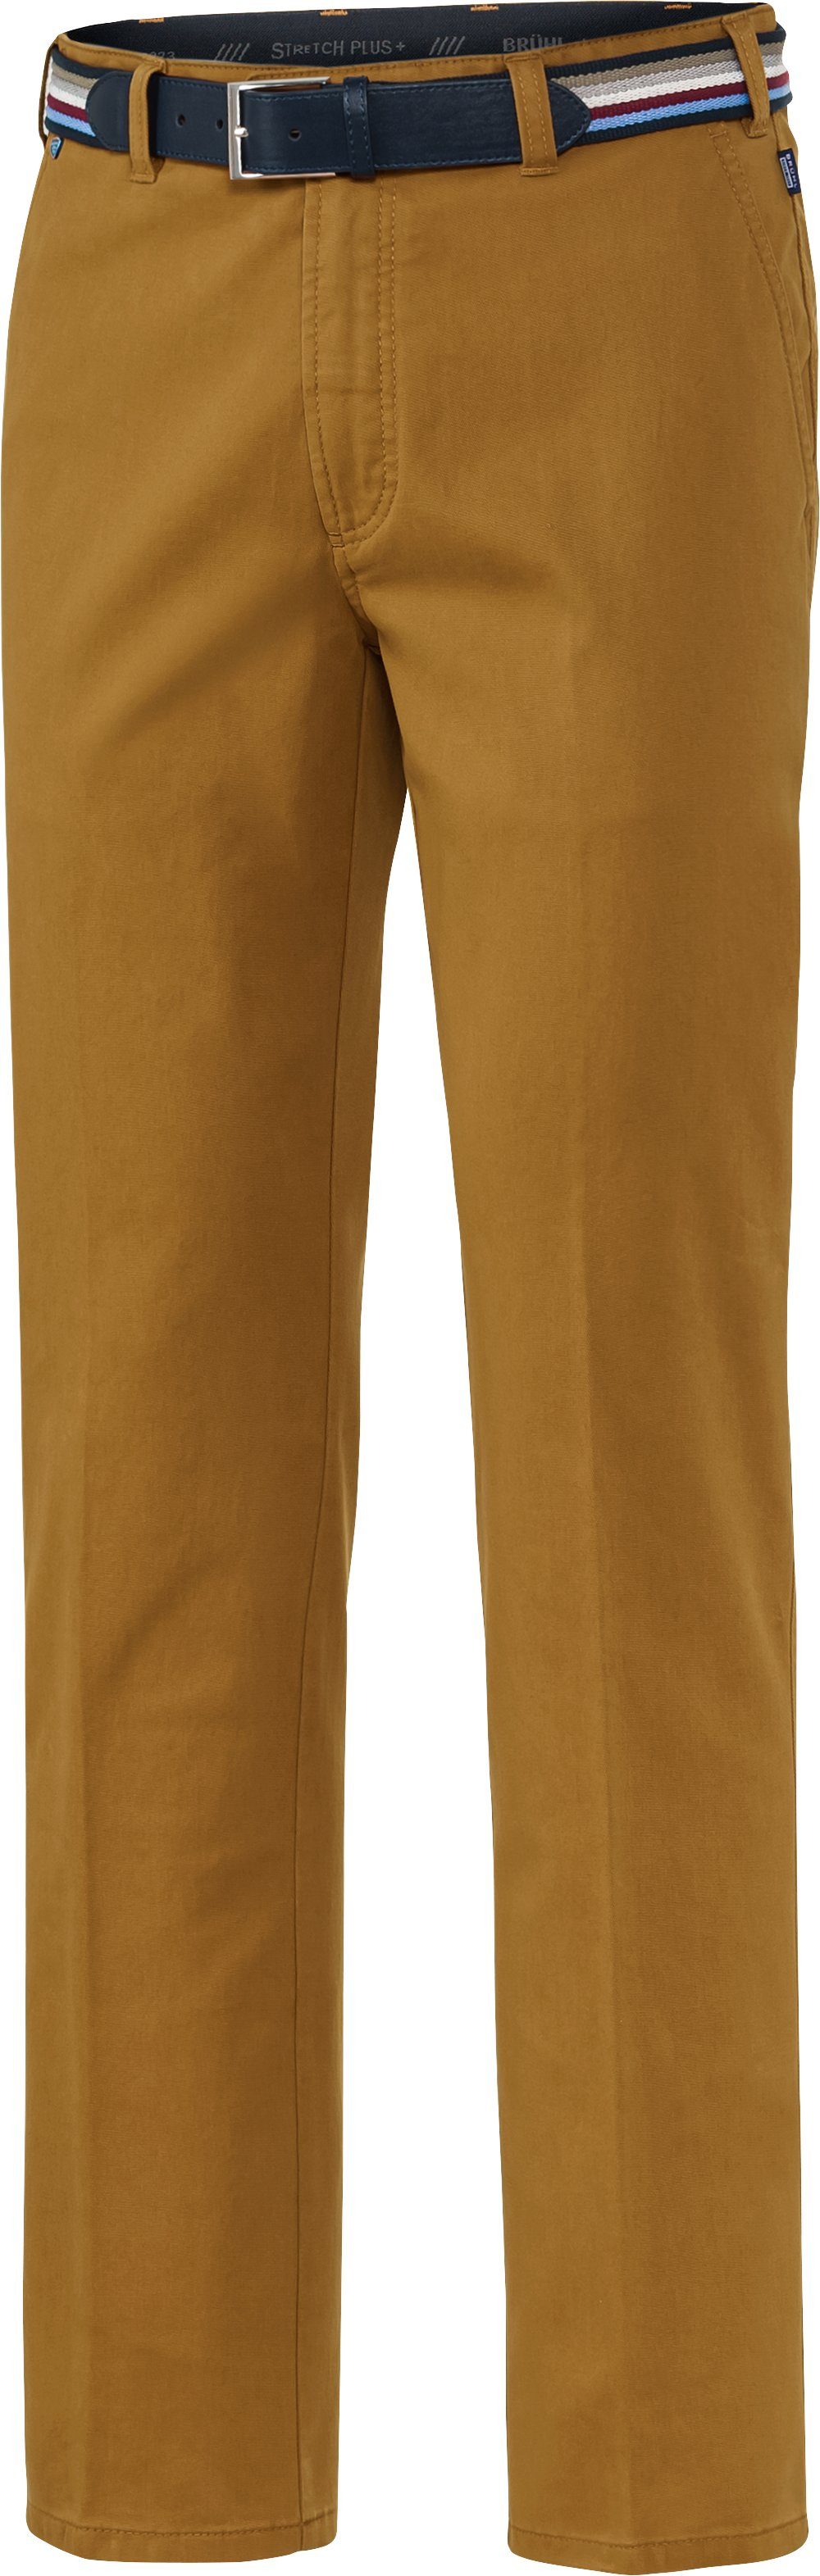 Brühl Stretch-Hose inklusive gelb 4-Jahreszeiten-Modell, Gürtel